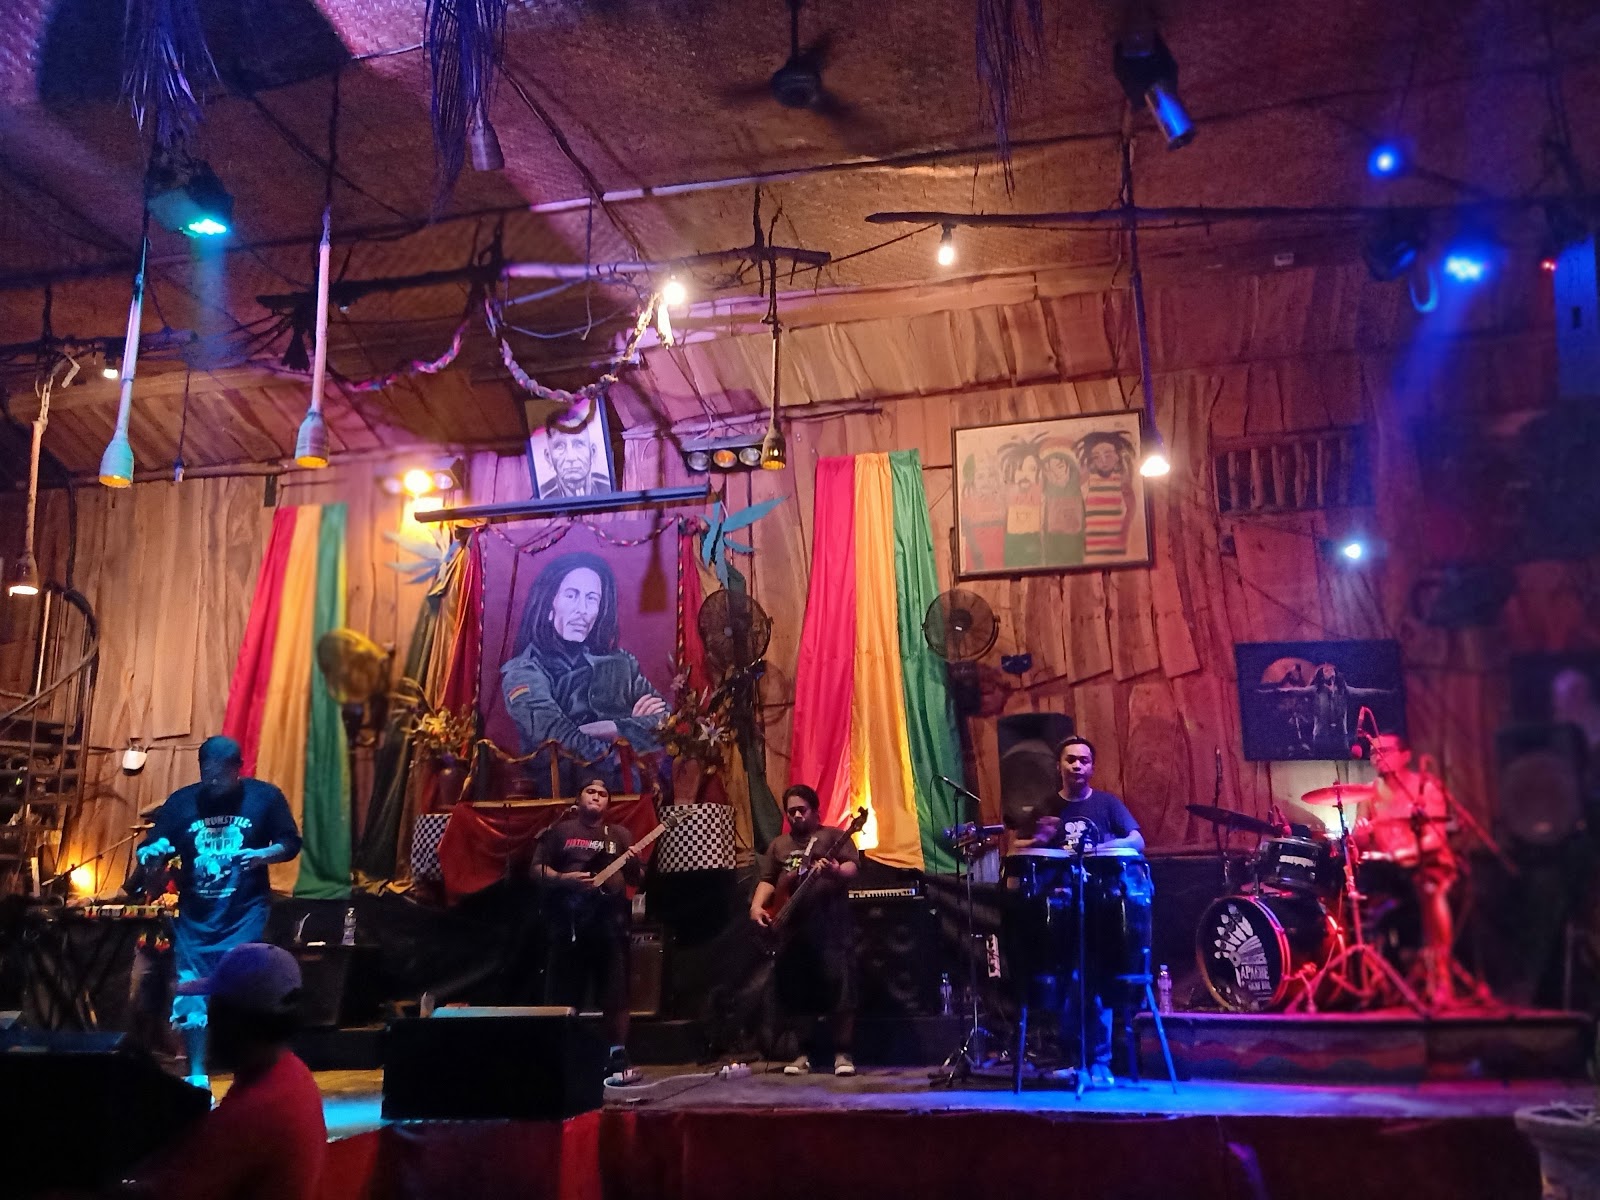 Apache Reggae Bar & Surfer bar